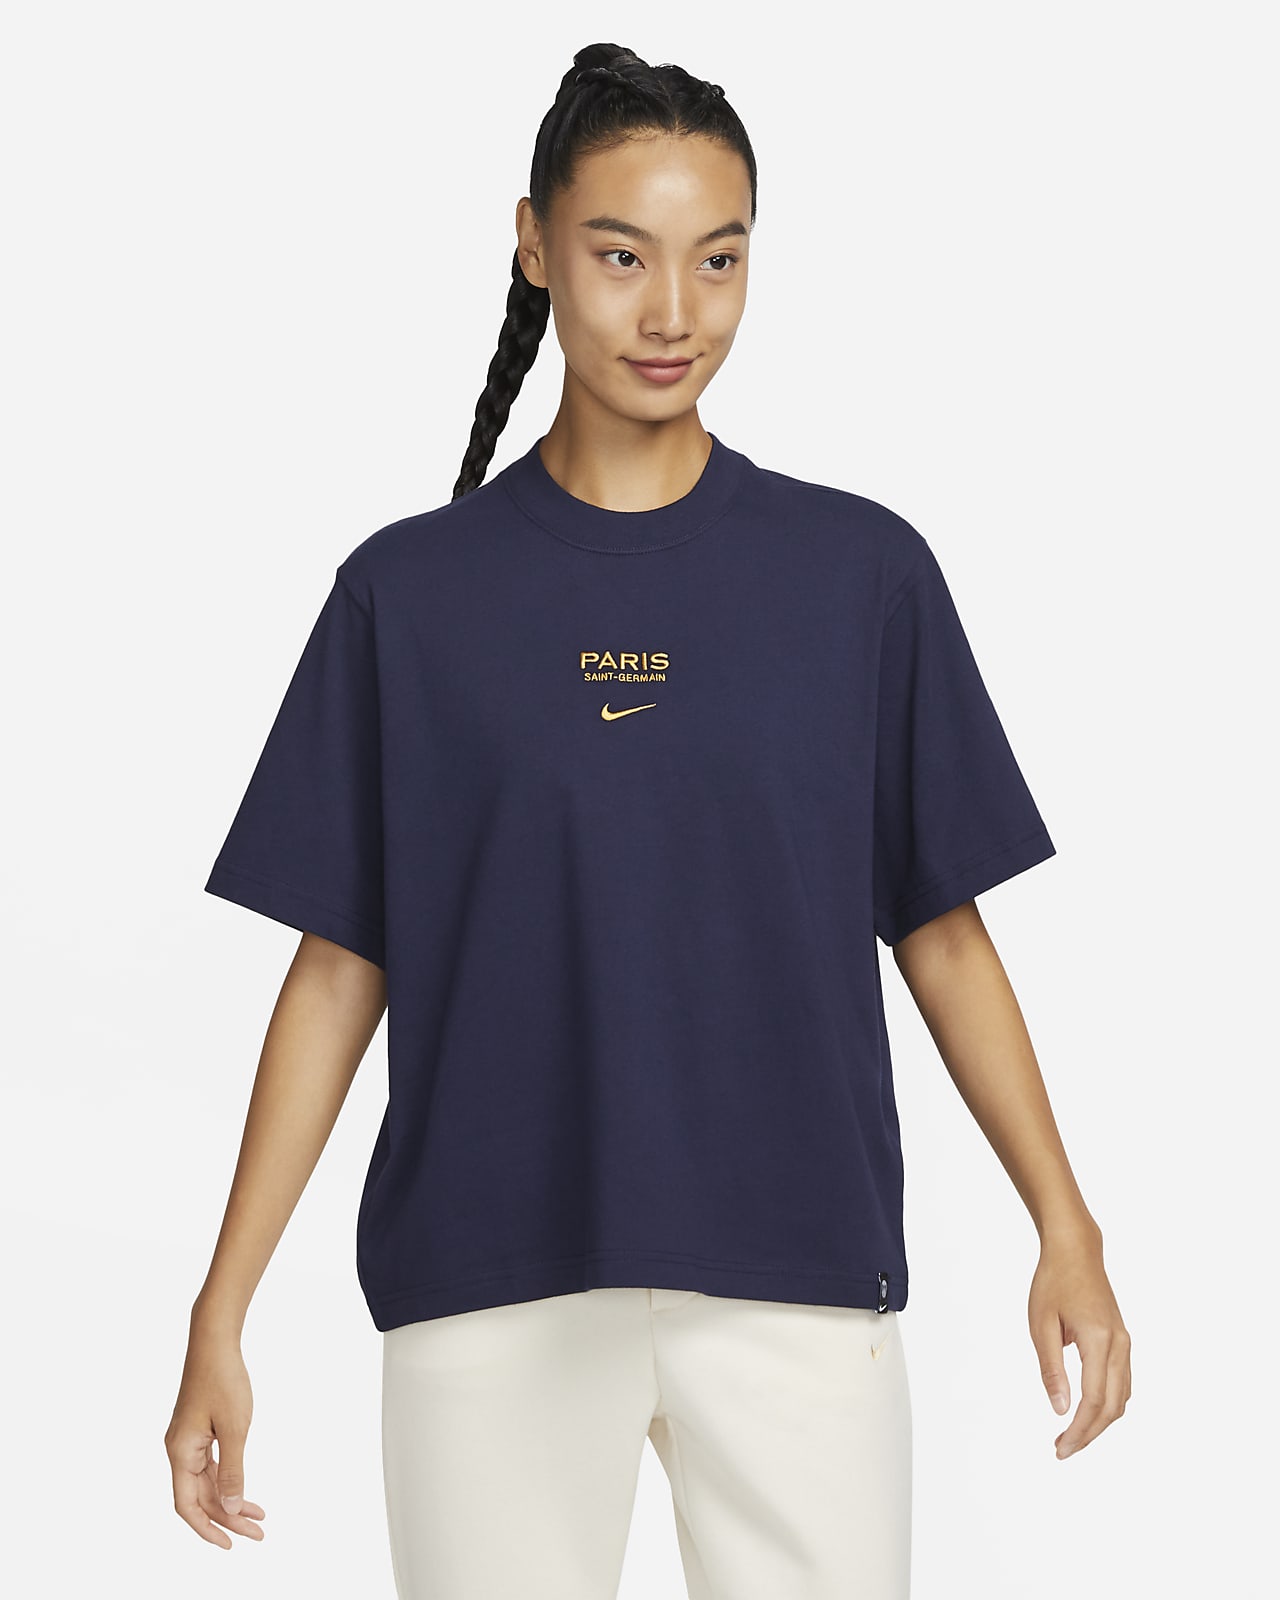 Paris T-shirt. Nike ID